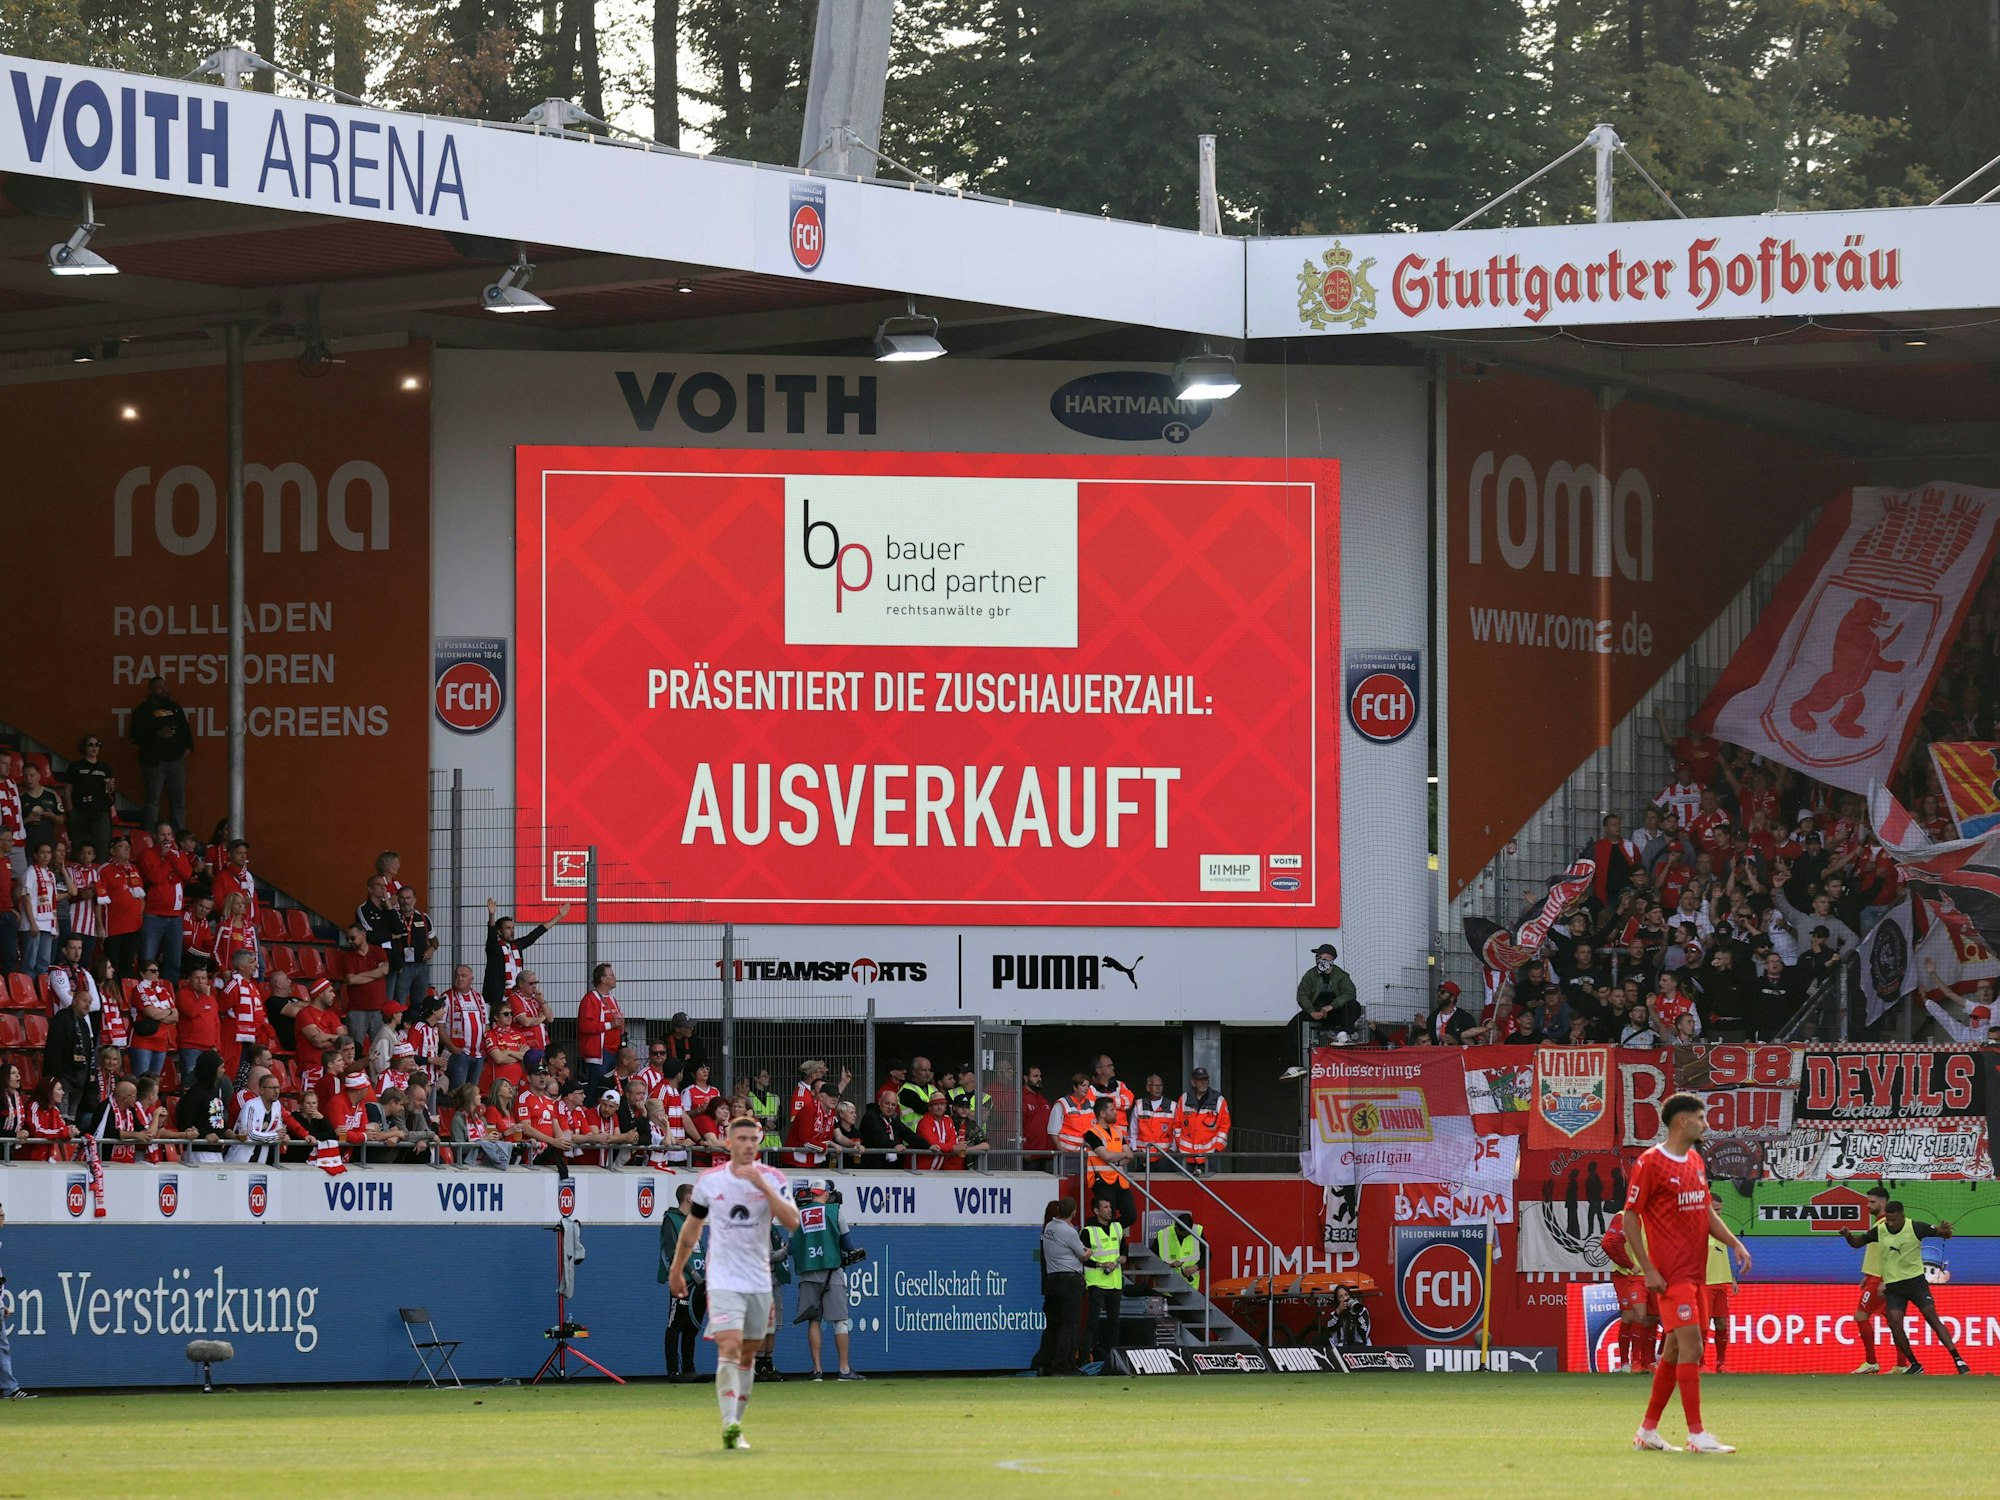 Die digitale Anzeige in der Voith Arena Heidenheim zeigt an, dass das Stadion ausverkauft ist. Darüber ist eine Werbetafel von Stuttgarter Hofbräu.